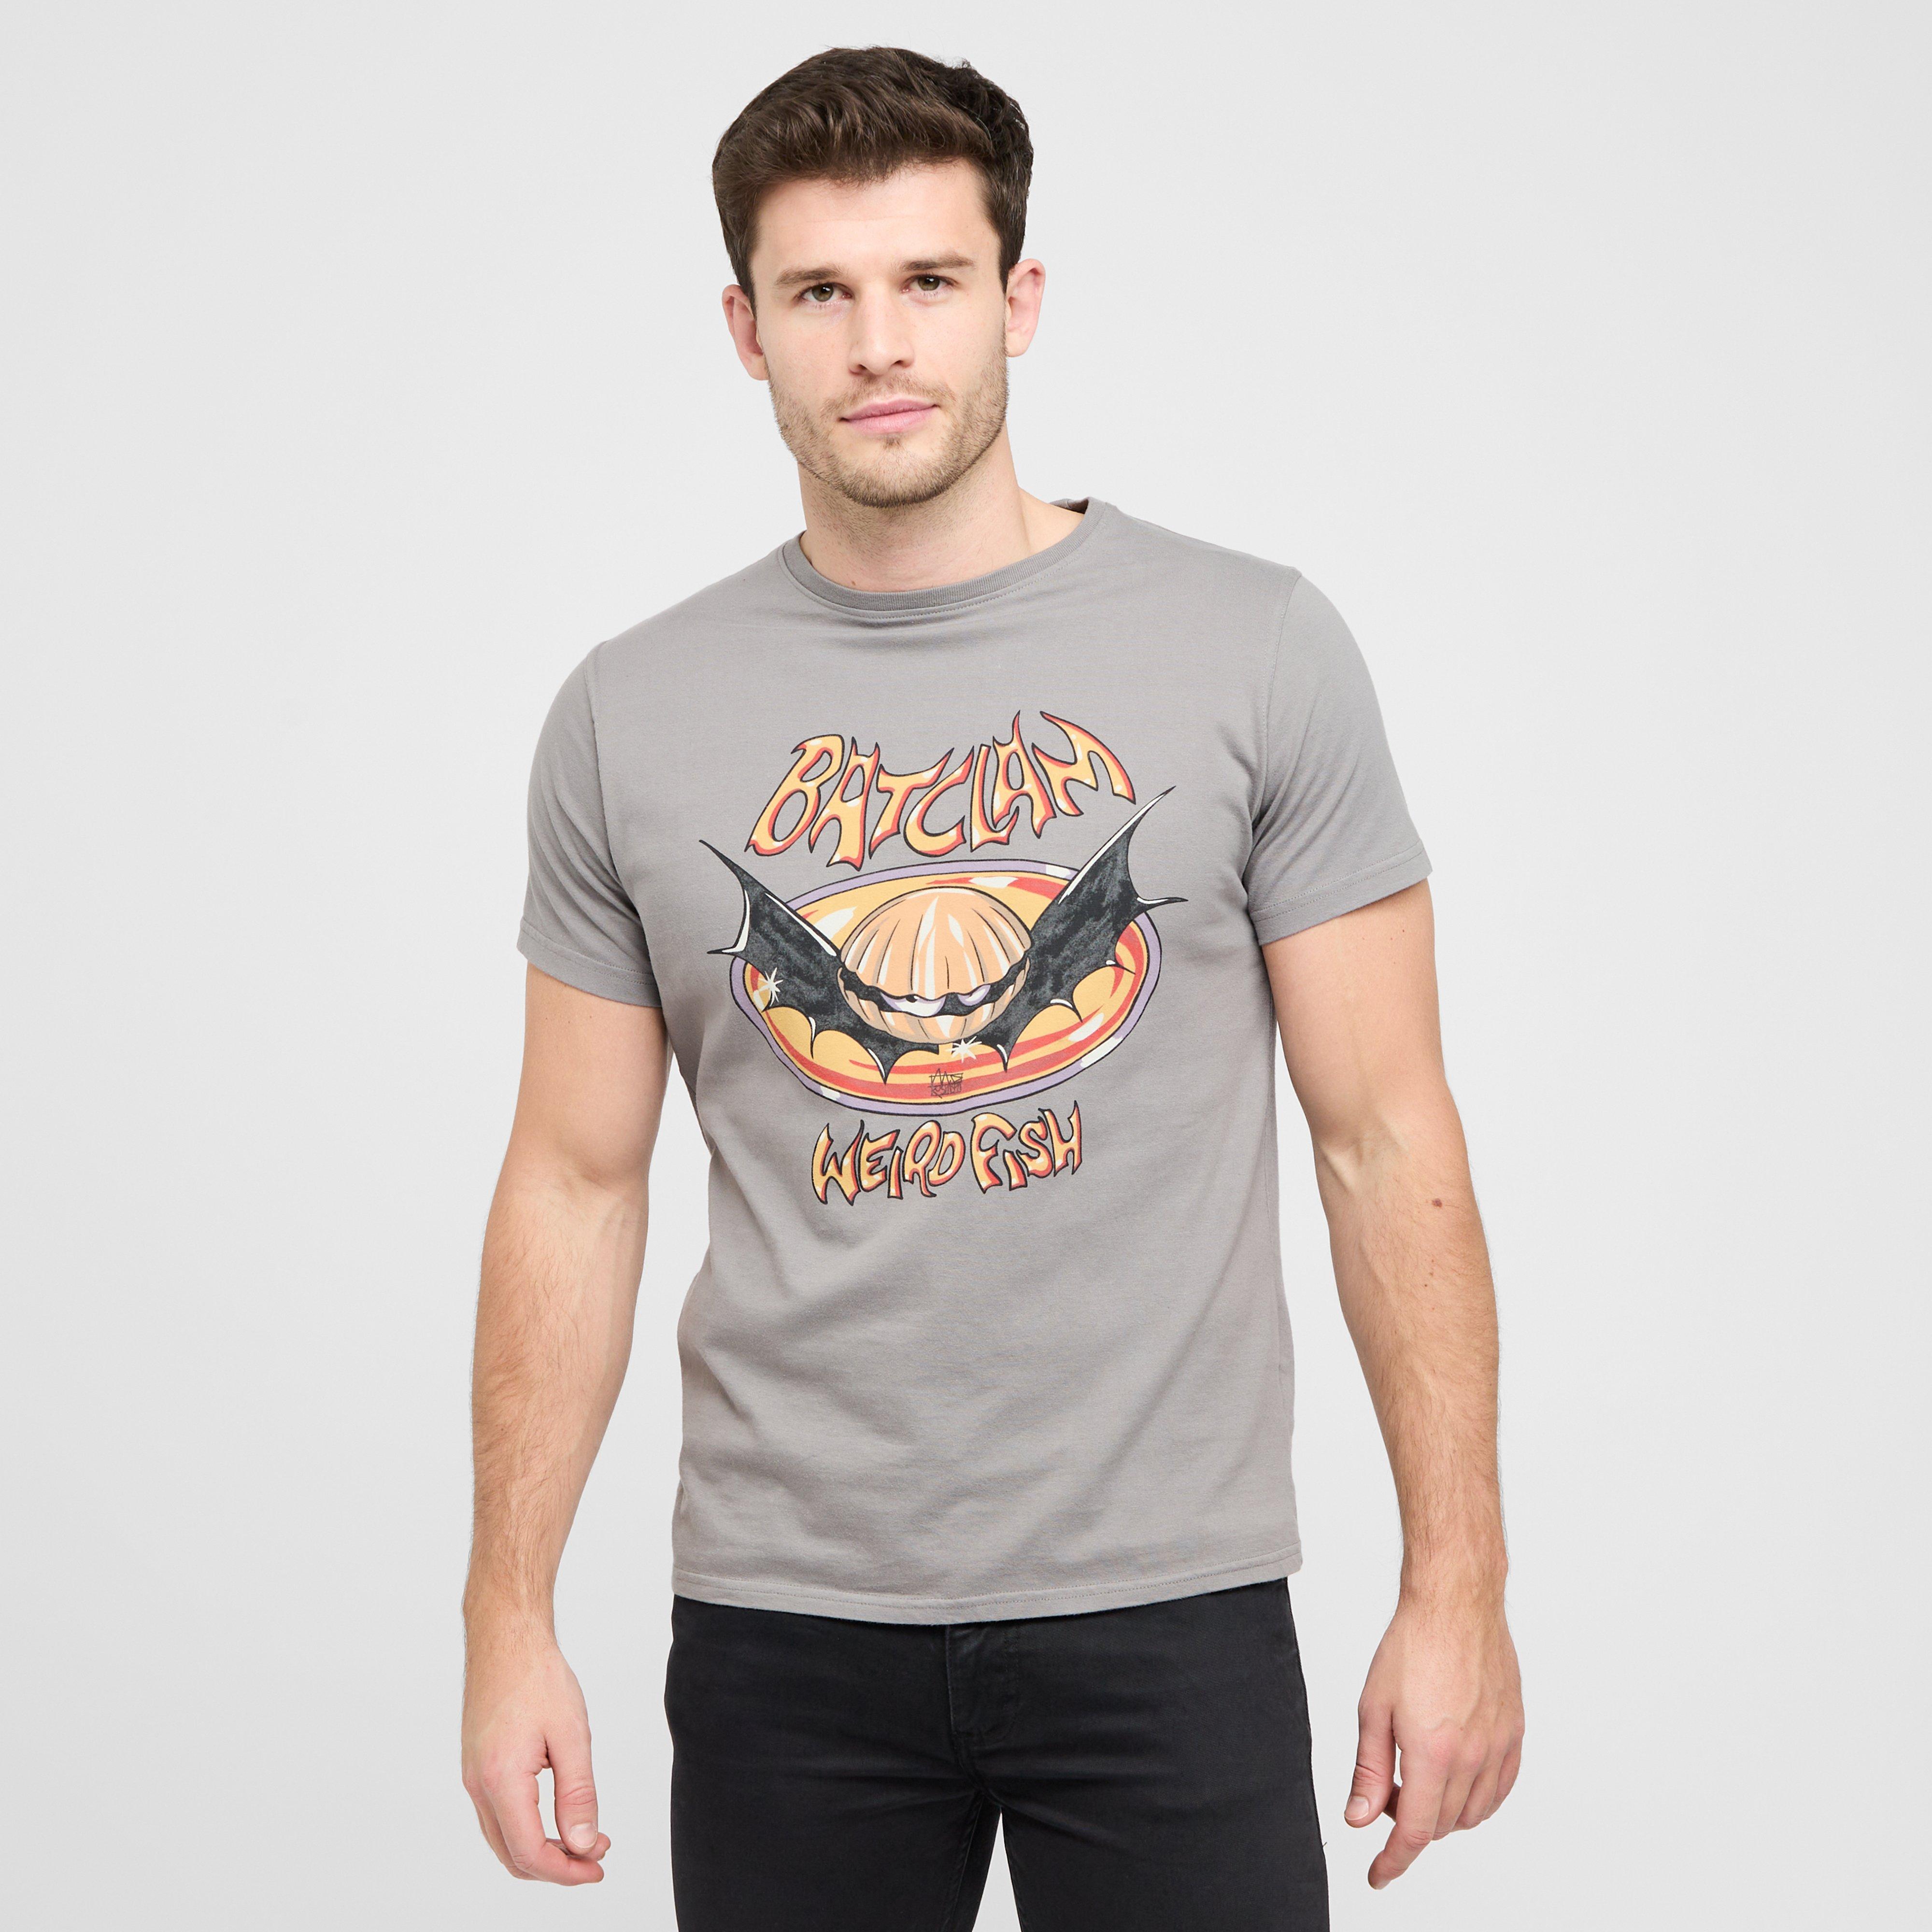 Weird Fish Mens Batclam T-shirt - Grey/gry  Grey/gry